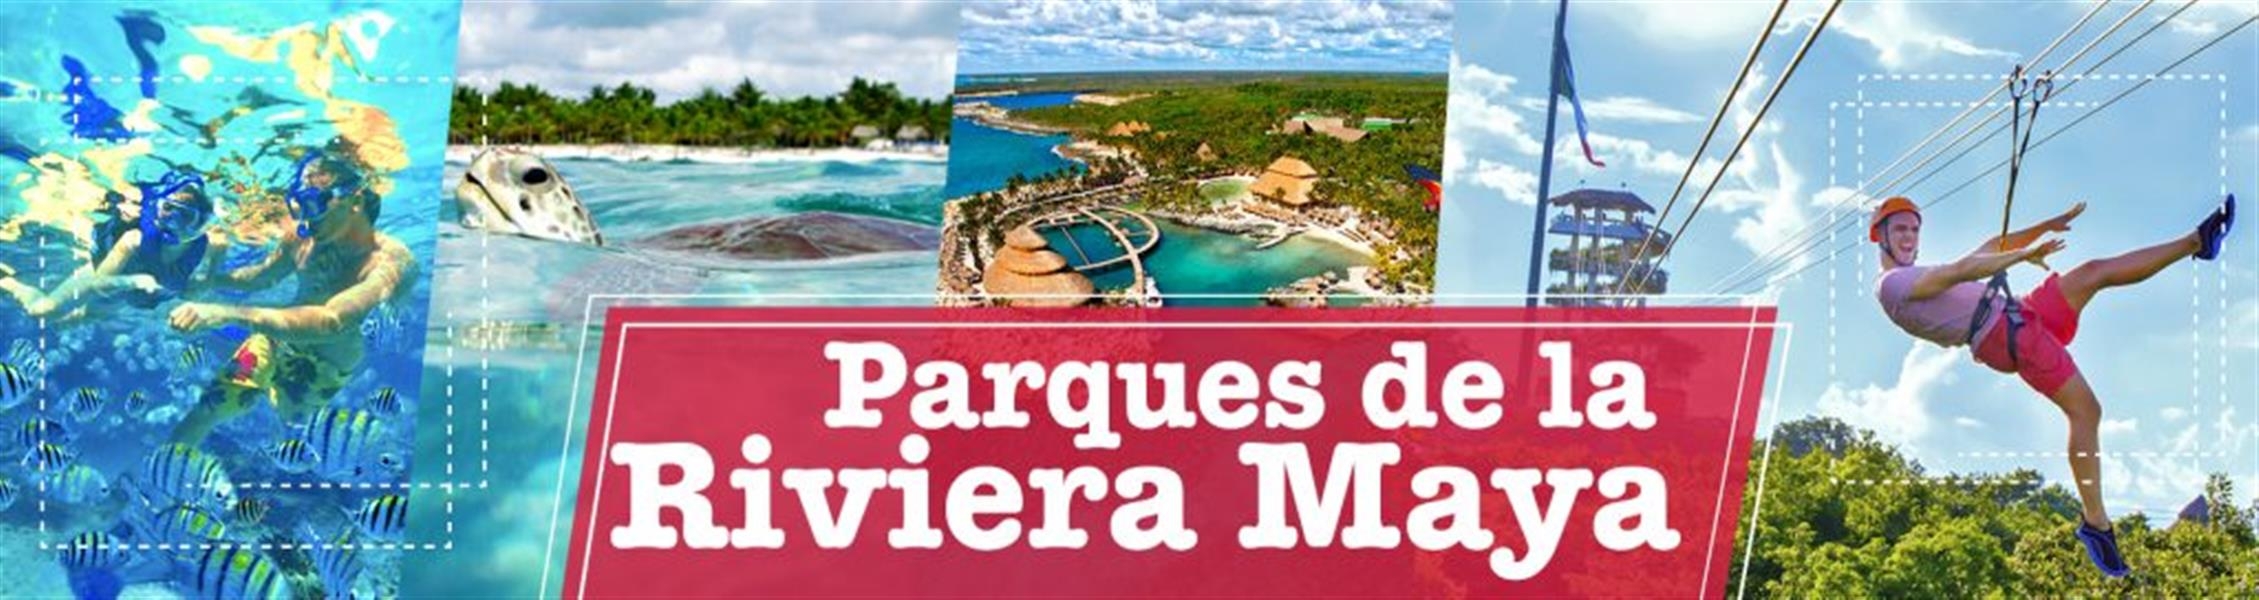 10 parques riviera maya nuevo